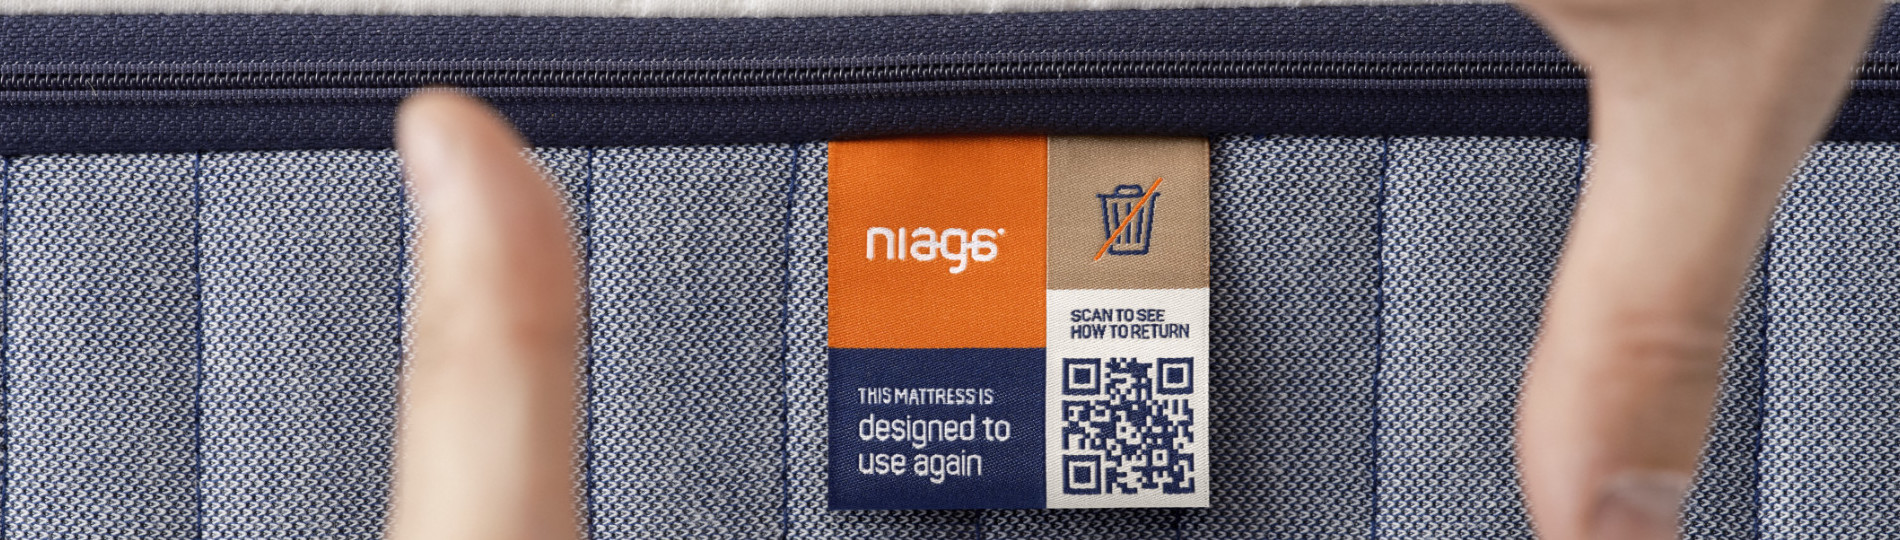 Scan het Niaga® label en ontdek het Product passport